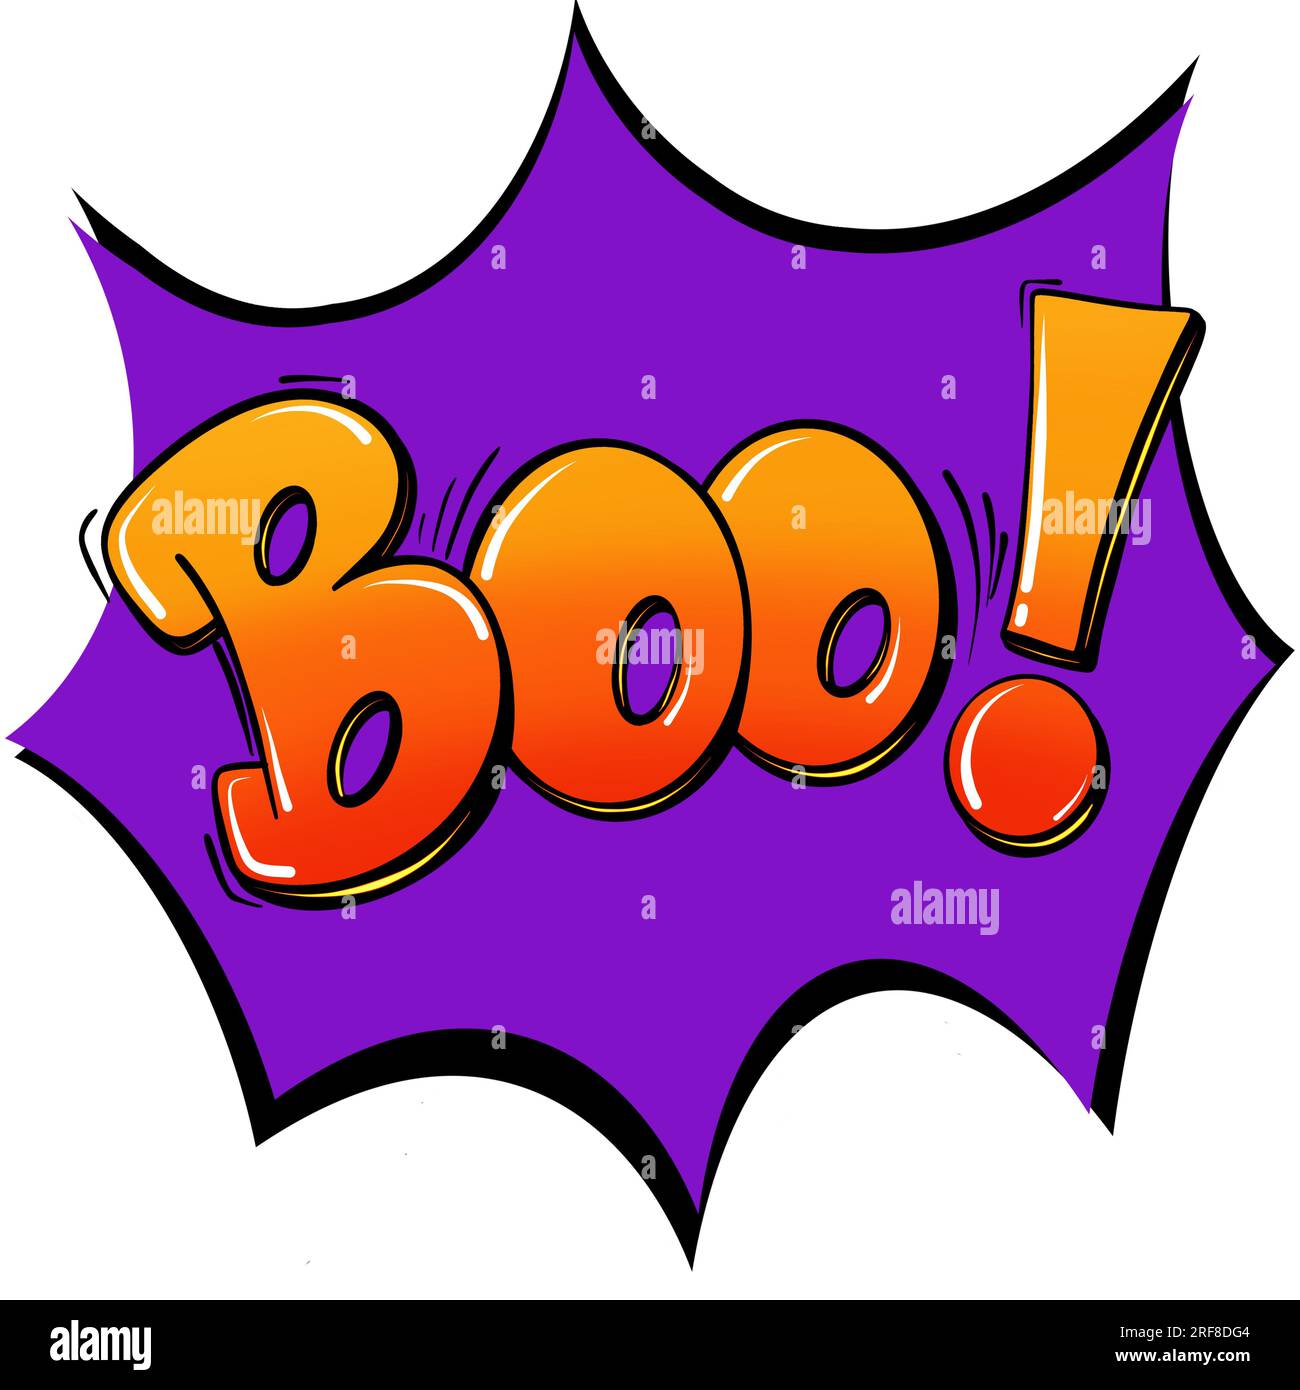 Halloween Clipart Stock Illustrations – 42,461 Halloween Clipart Stock  Illustrations, Vectors & Clipart - Dreamstime